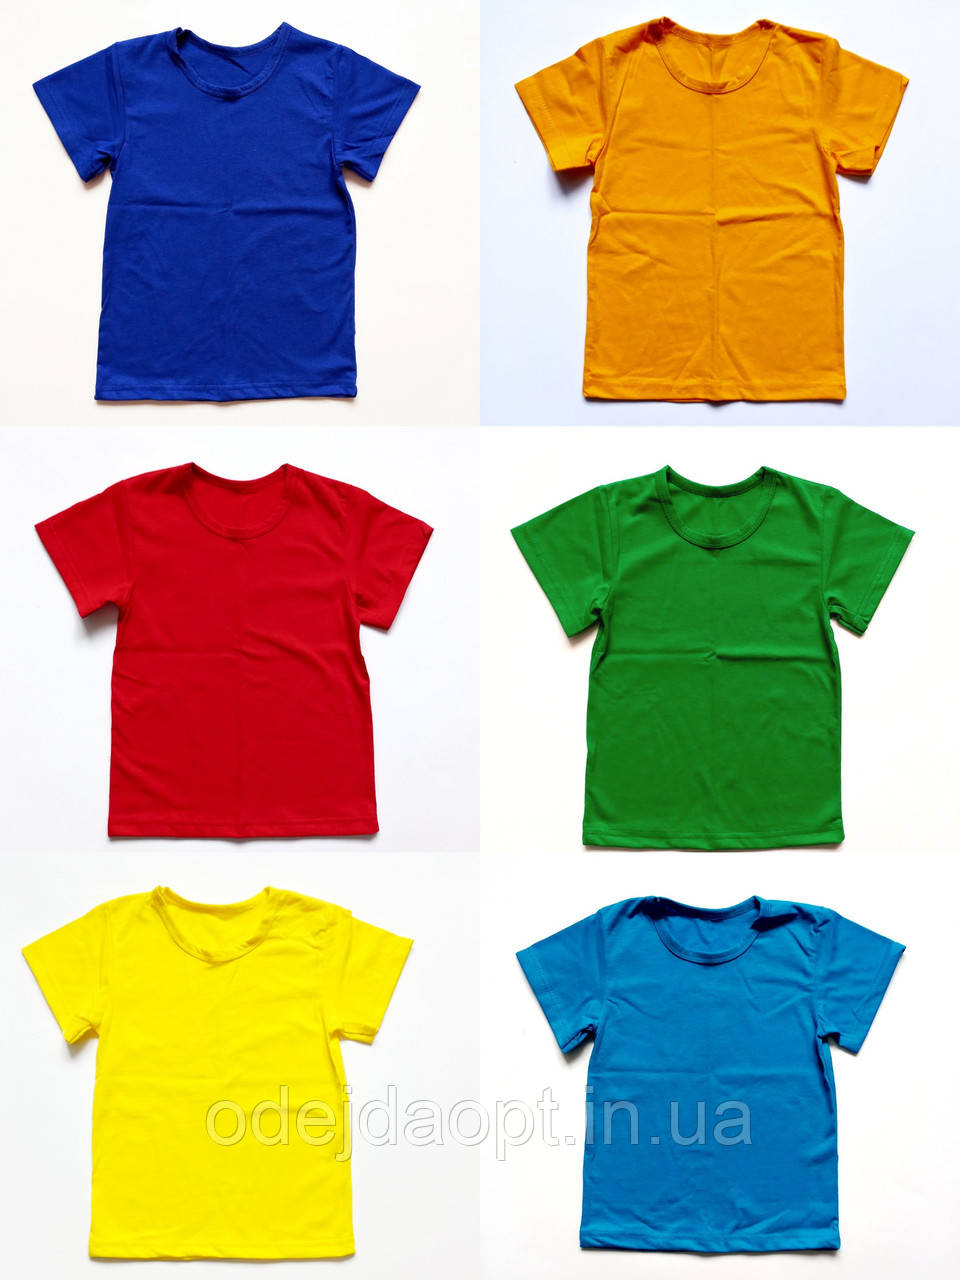 Дитяча однотонна футболка 2,3,4,5.6,7,8,9.10.11,12,13,14,15 років, фото 1